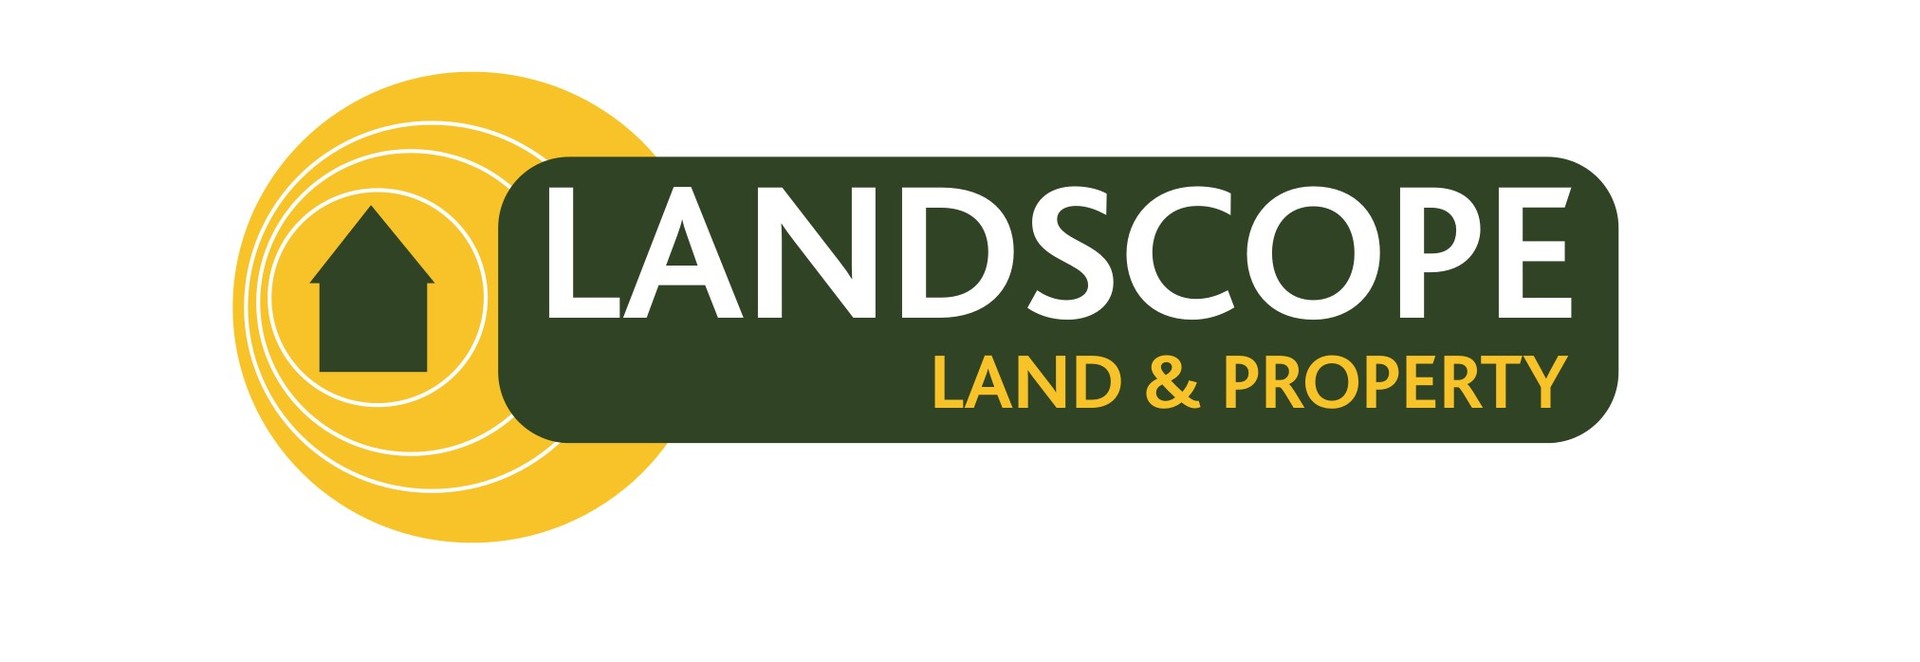 Landscope Social Media Management Bedfordshire